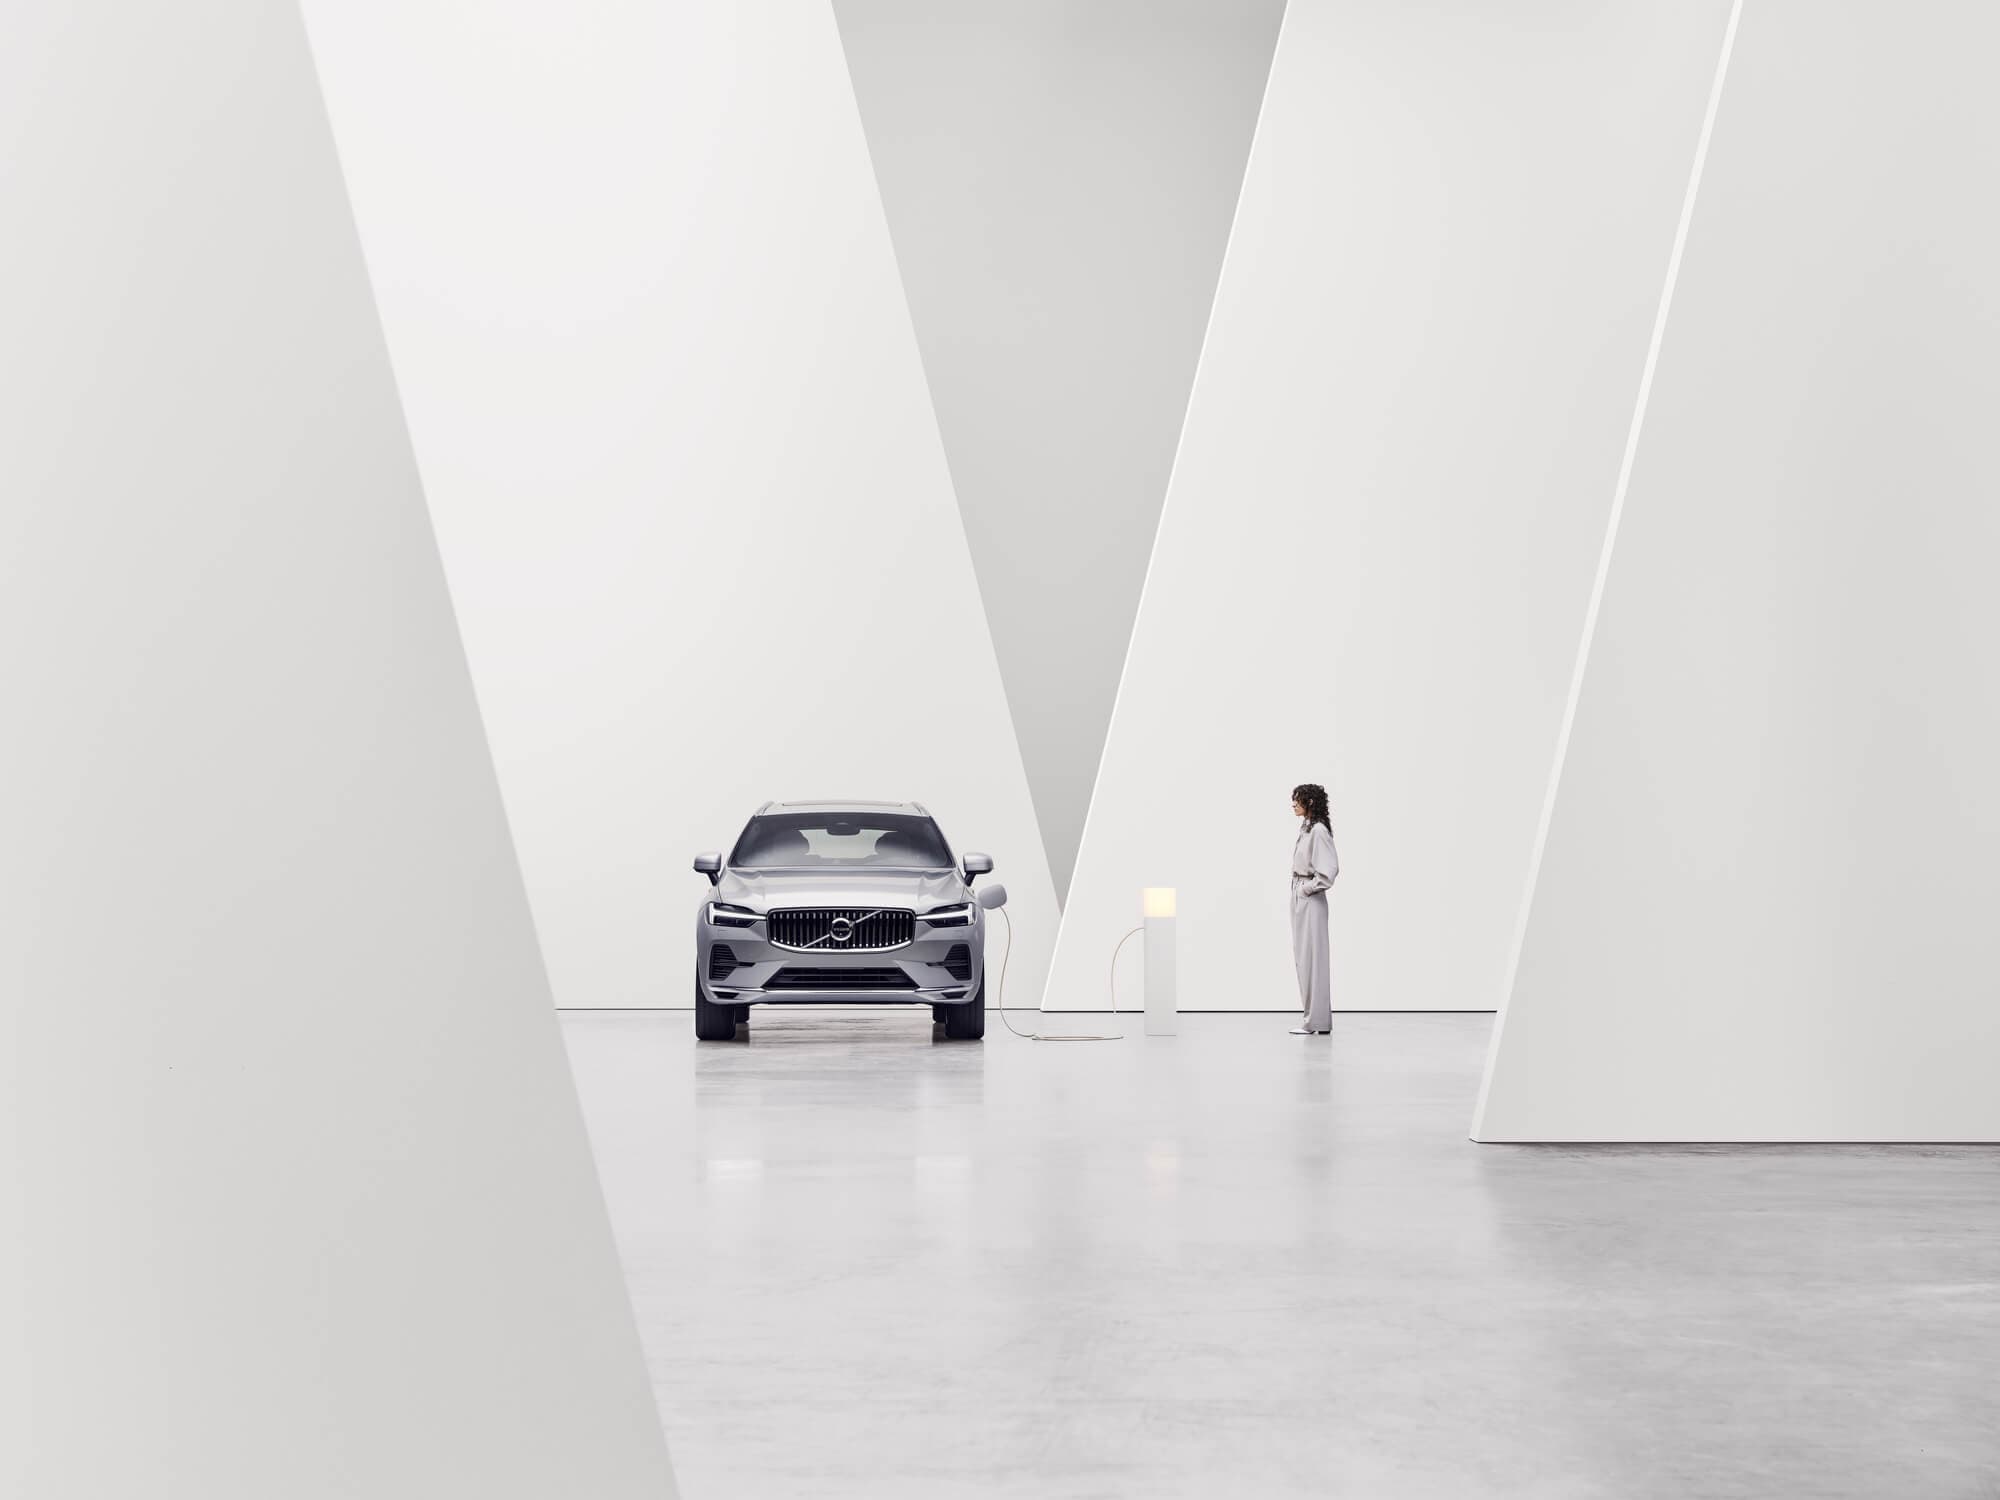 Una Volvo accanto a una colonnina di carica vista da davanti in un ambiente interno bianco